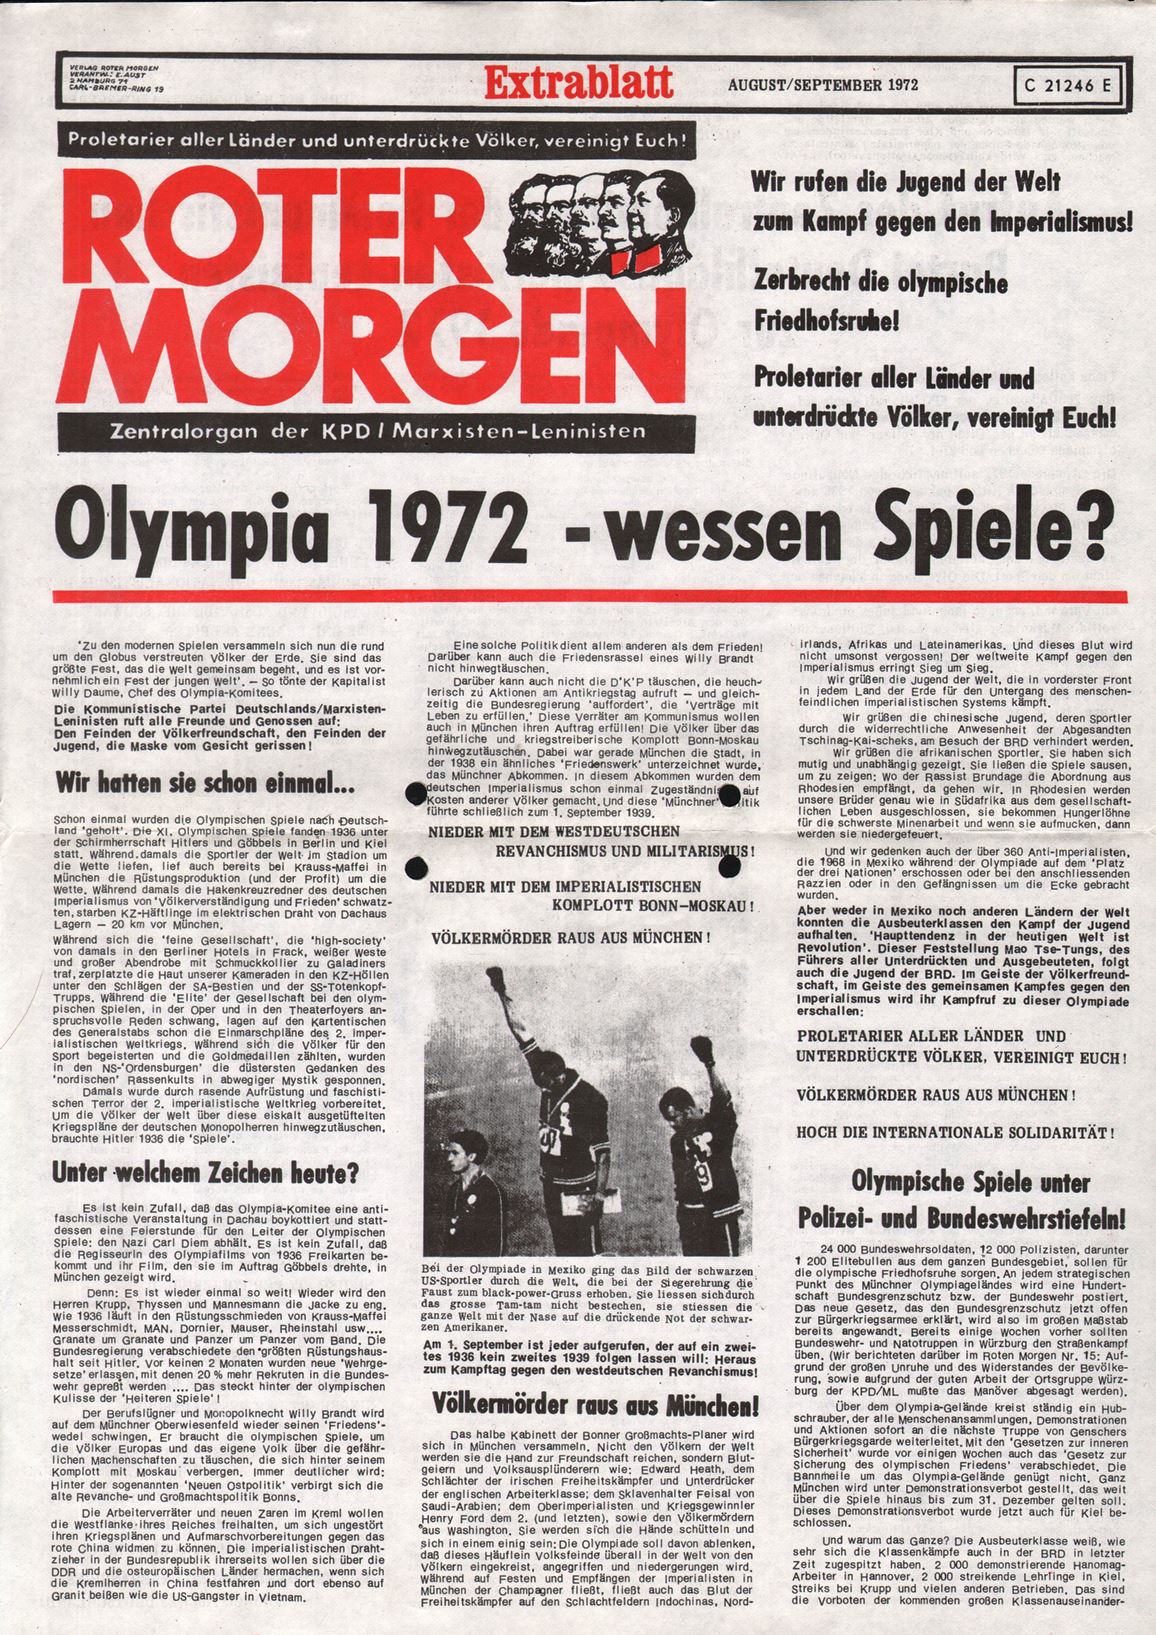 Roter Morgen, 6. Jg., August/September 1972, Extrablatt, Seite 1